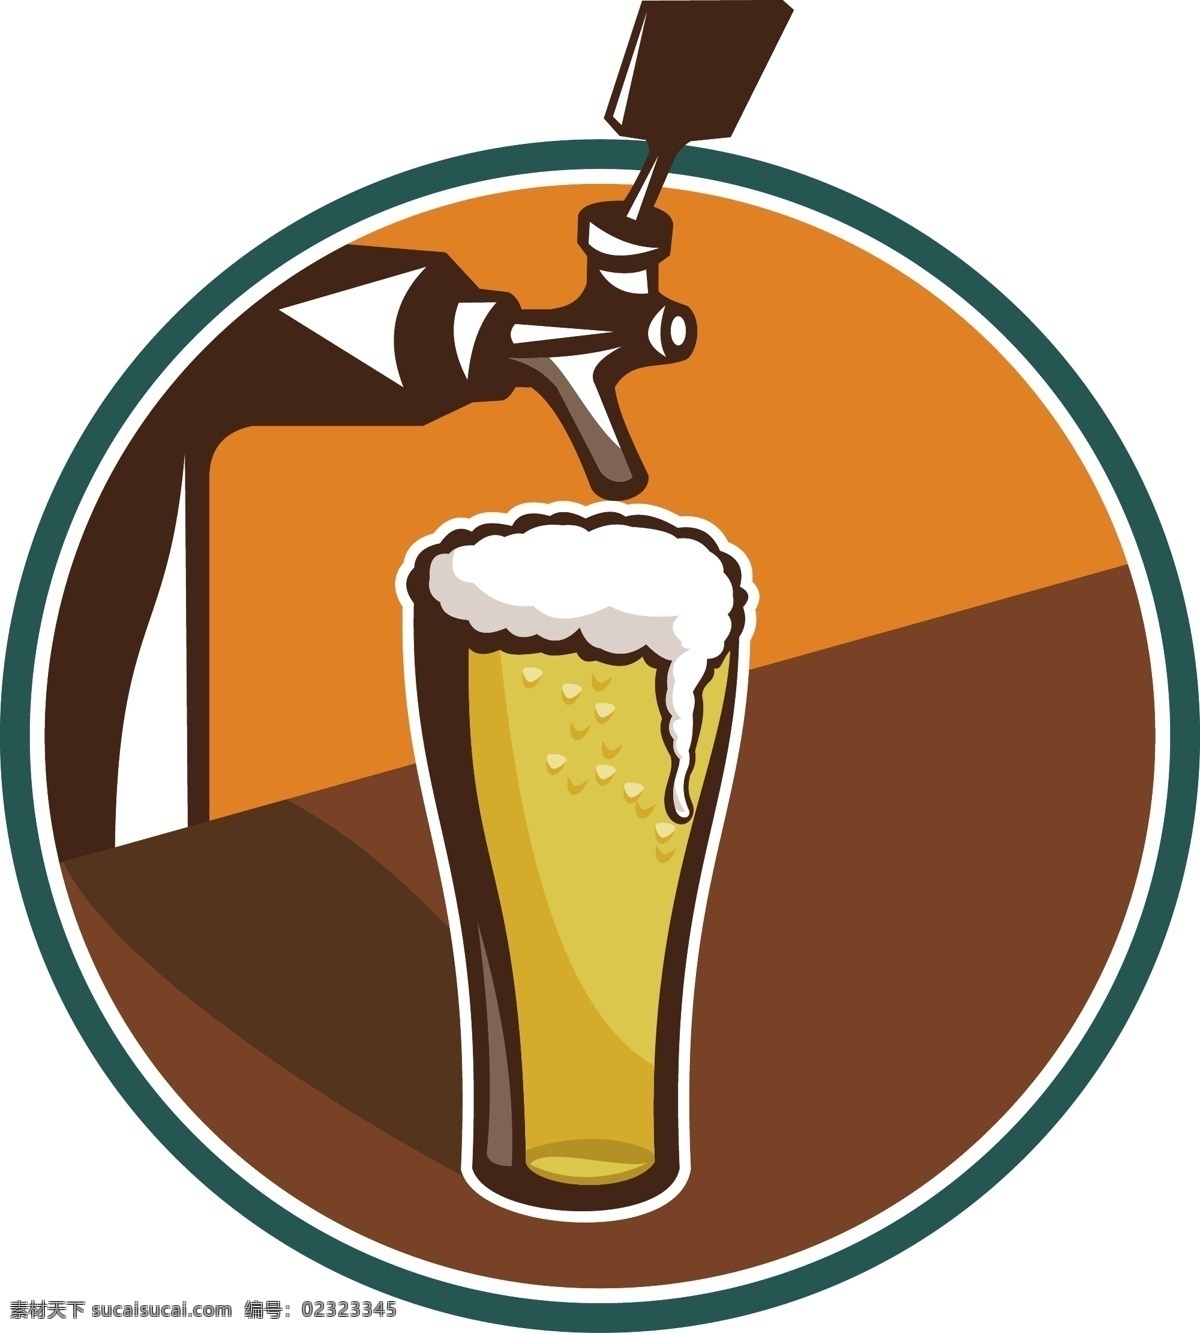 德国 啤酒节 啤酒广告 啤酒海报 手绘 饮料酒水 德国啤酒节 矢量 矢量图 其他矢量图